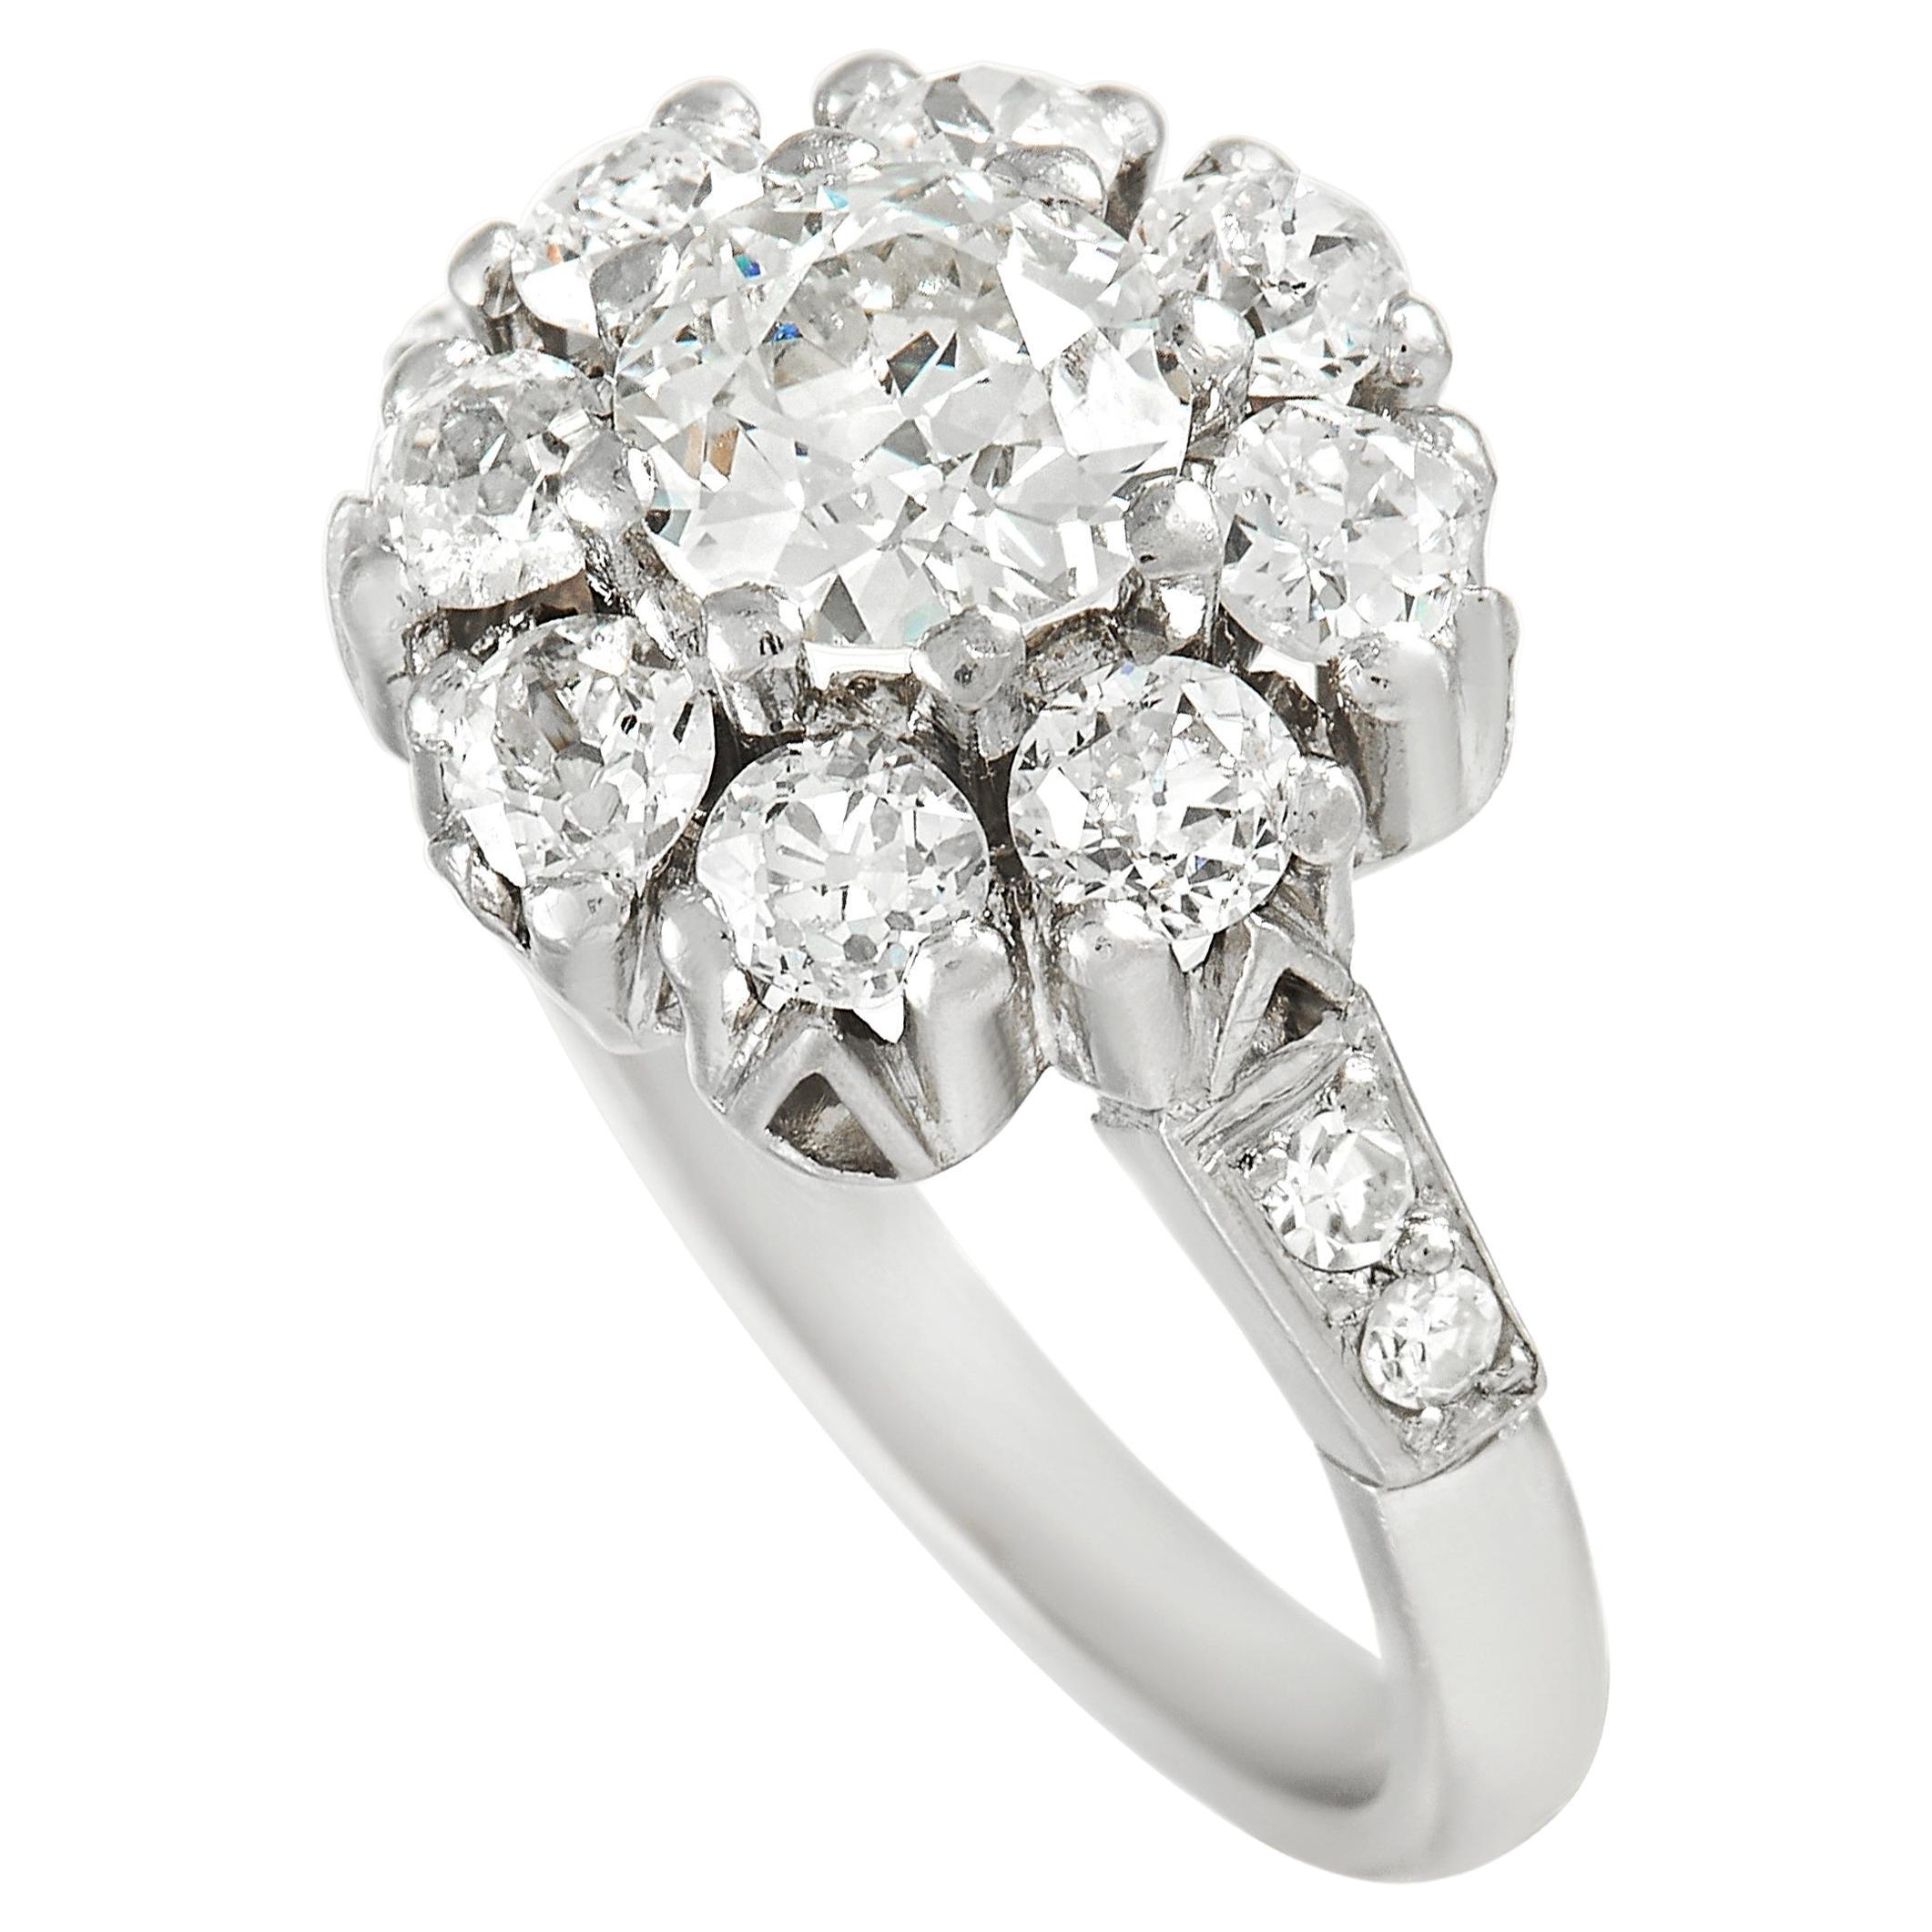 LB Exclusive Platinum 1.62 ct Diamond Ring